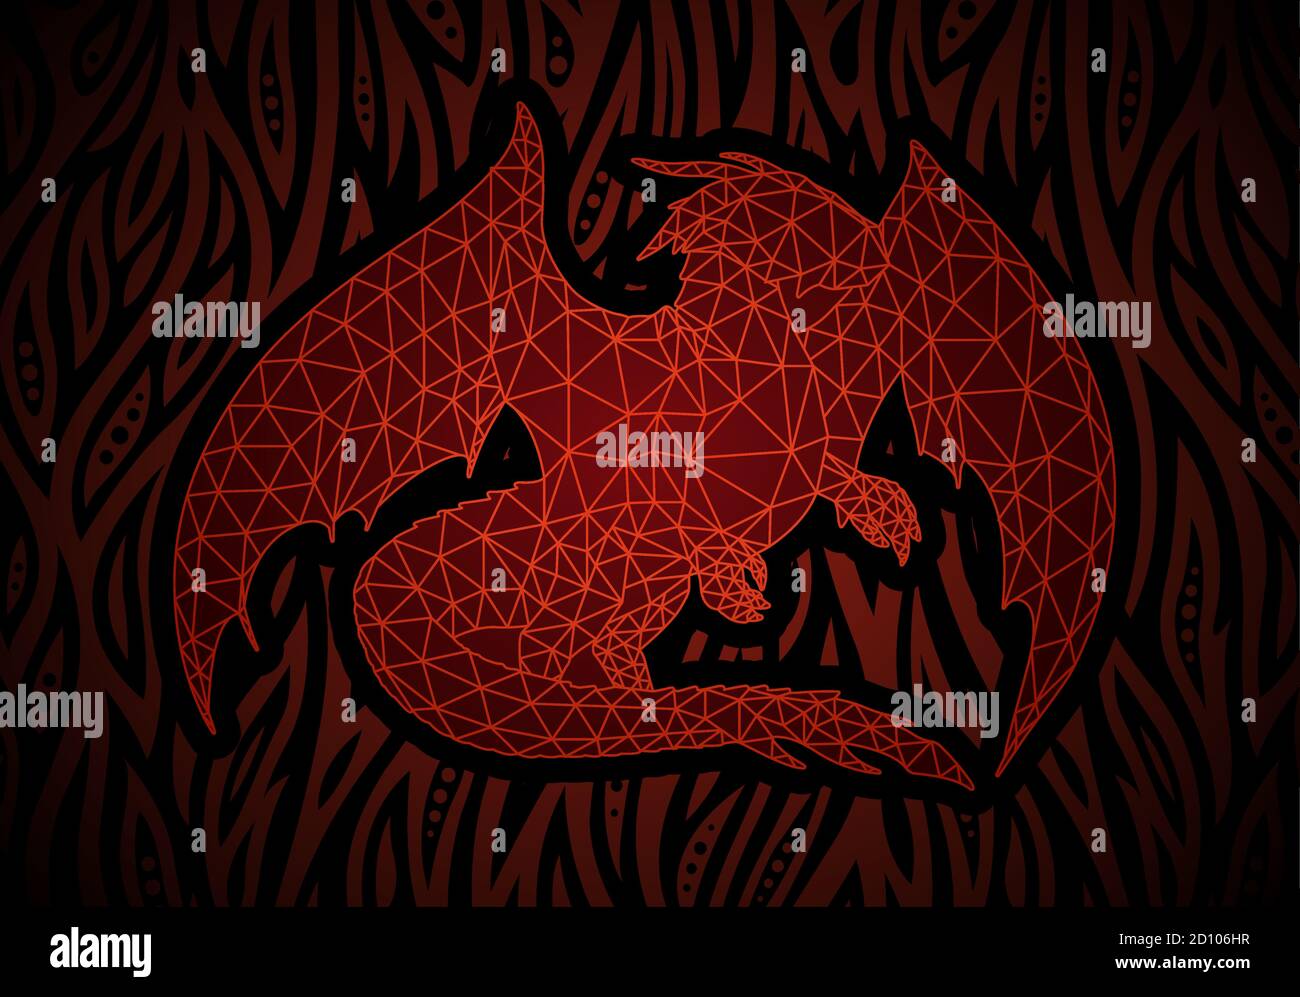 Bella illustrazione fantasy astratta con la silhouette del drago rosso su fiammeggiante sfondo Illustrazione Vettoriale